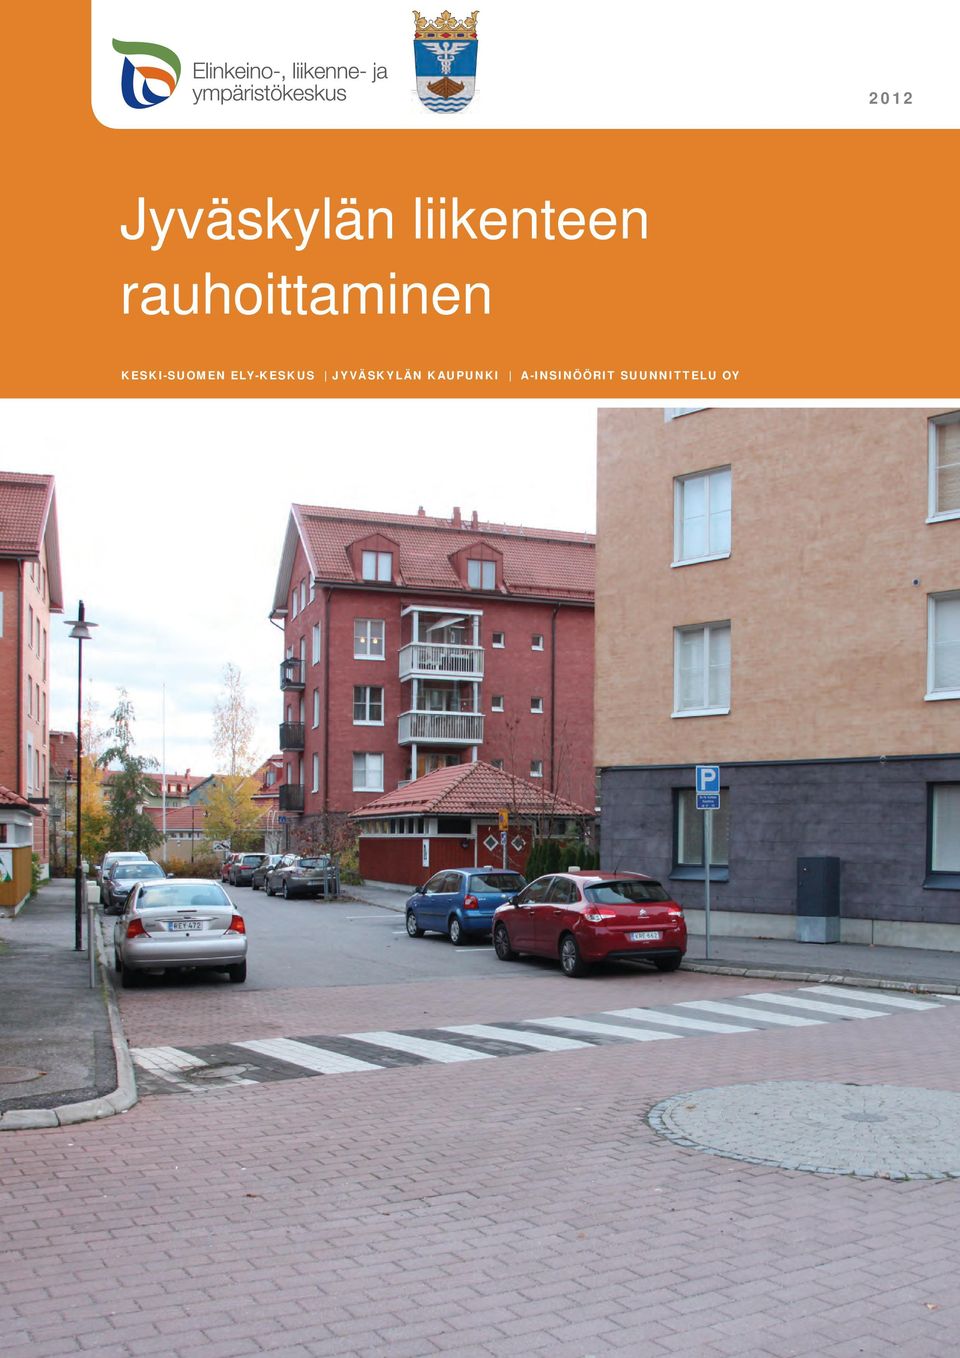 ely-keskus Jyväskylän